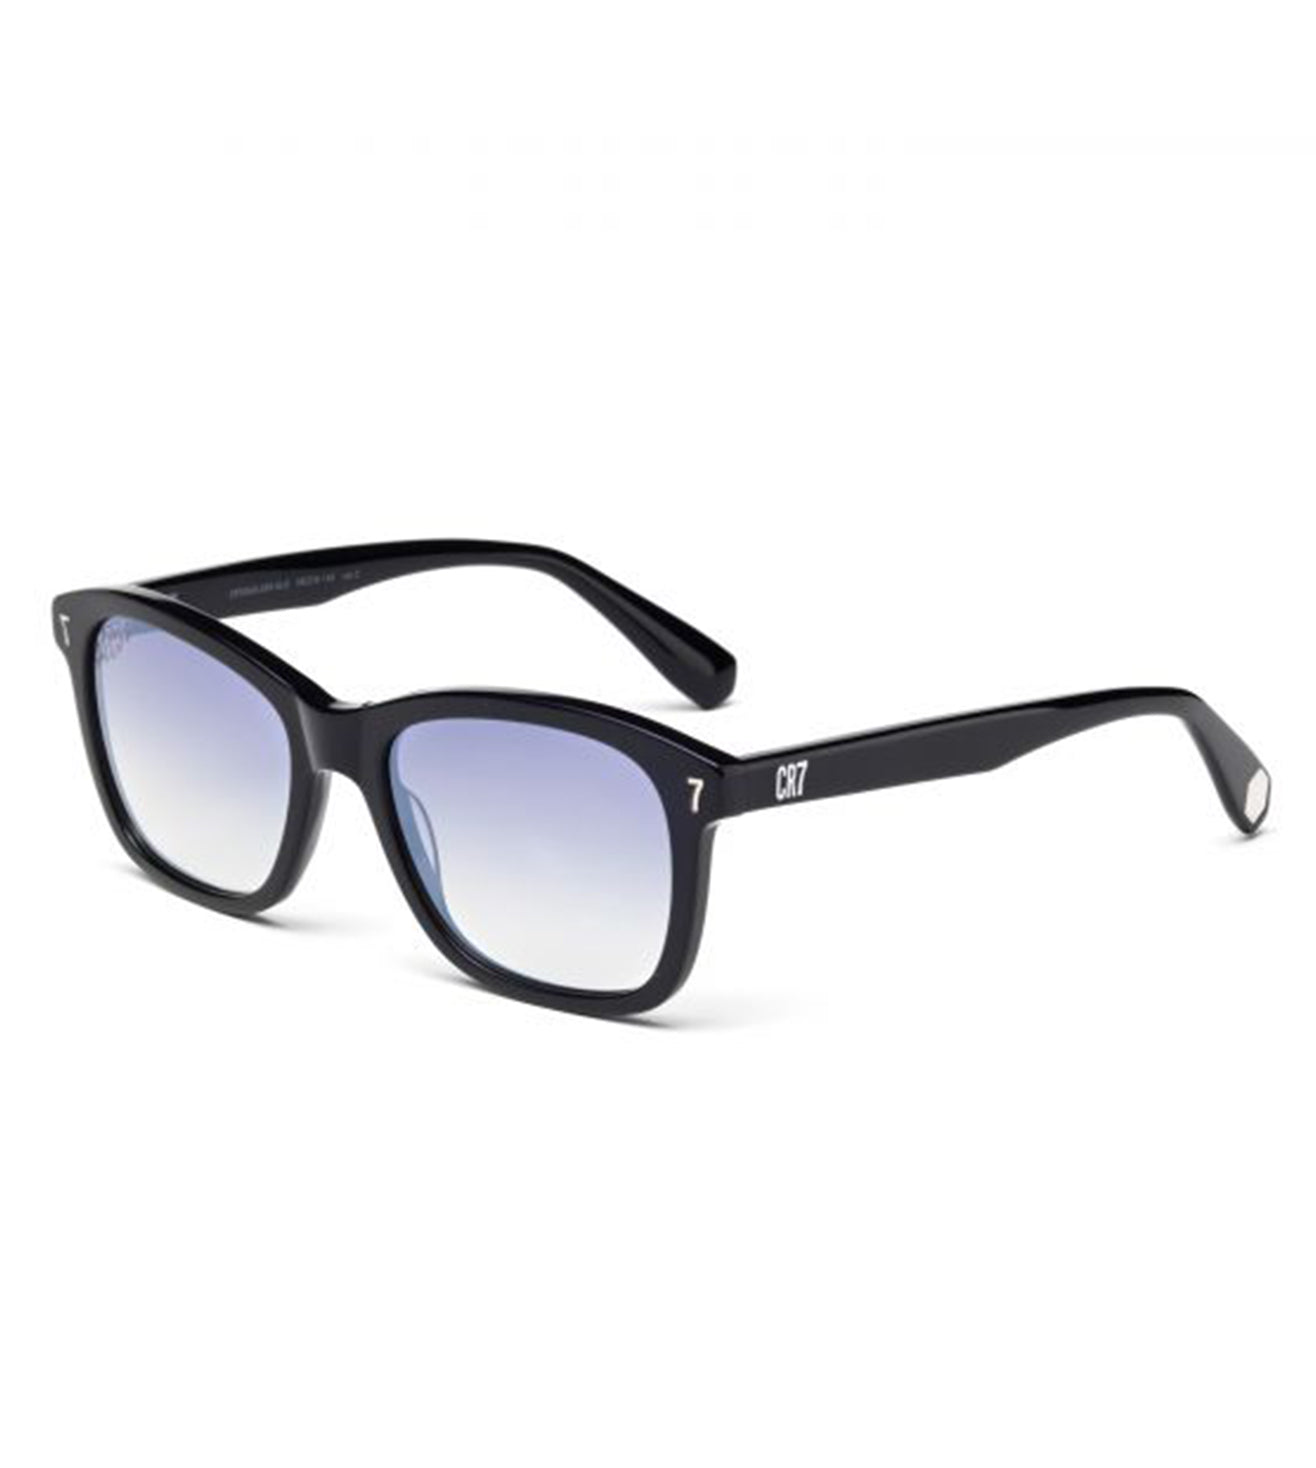 CR7 Unisex Blue Square Sunglasses